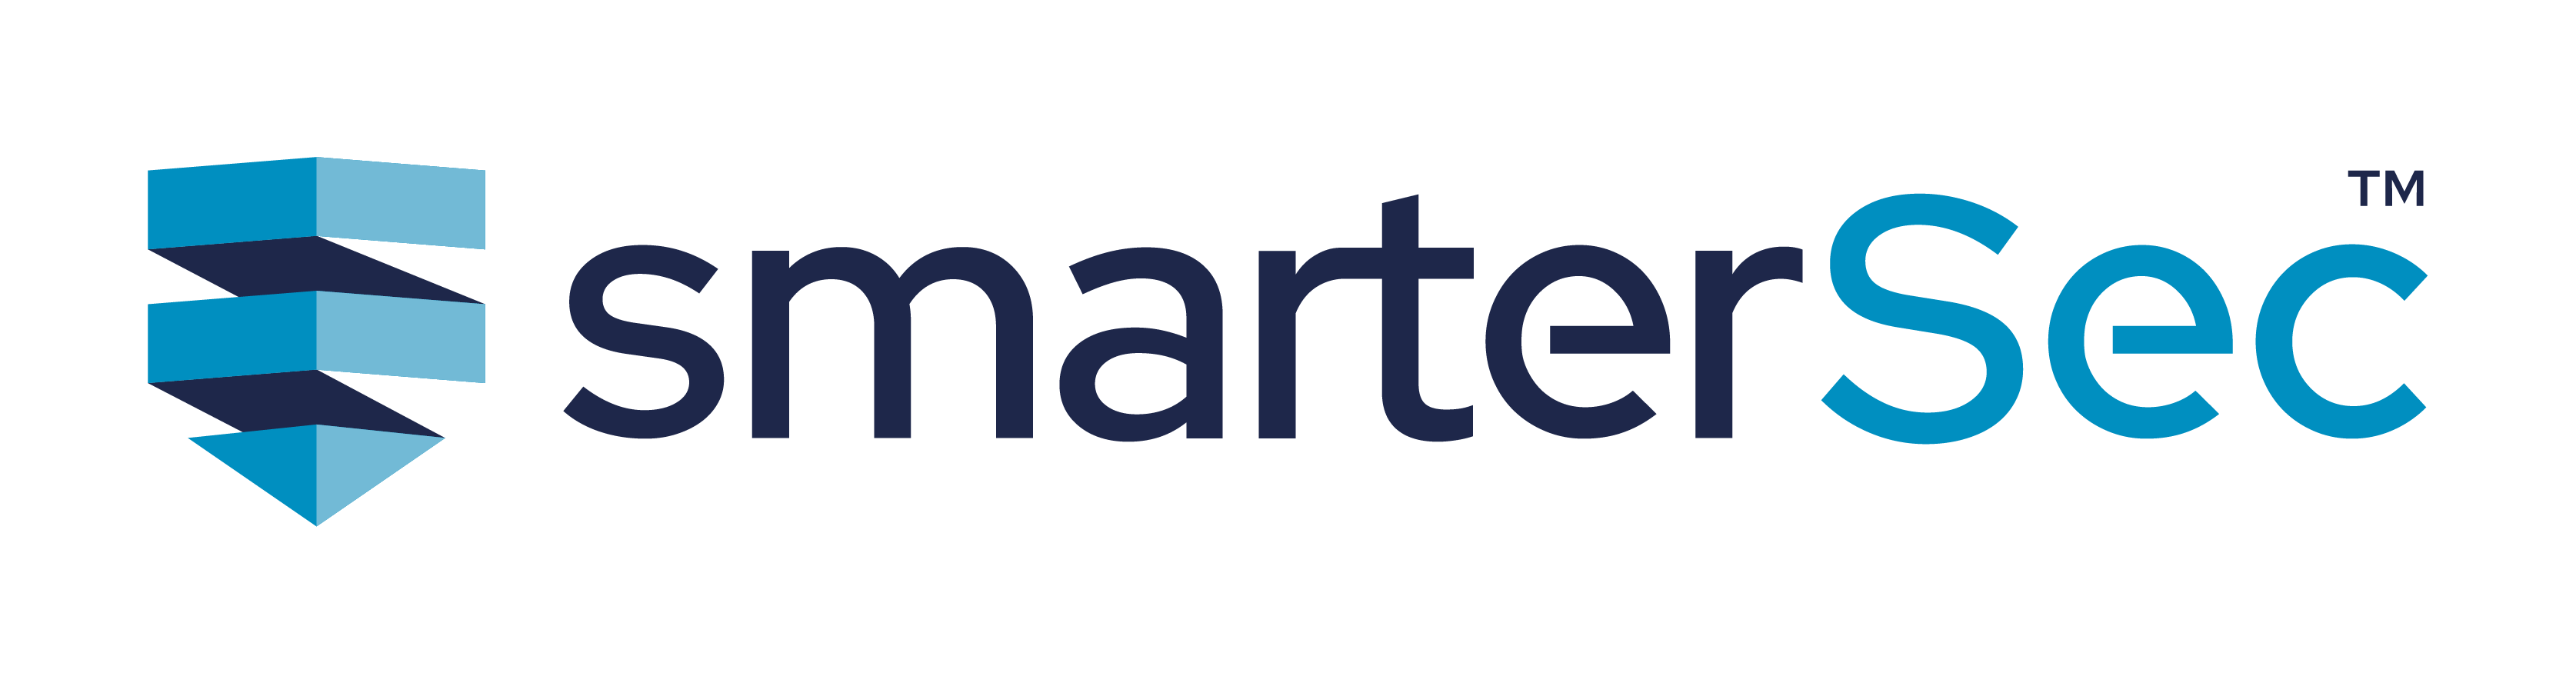 smartersec logo